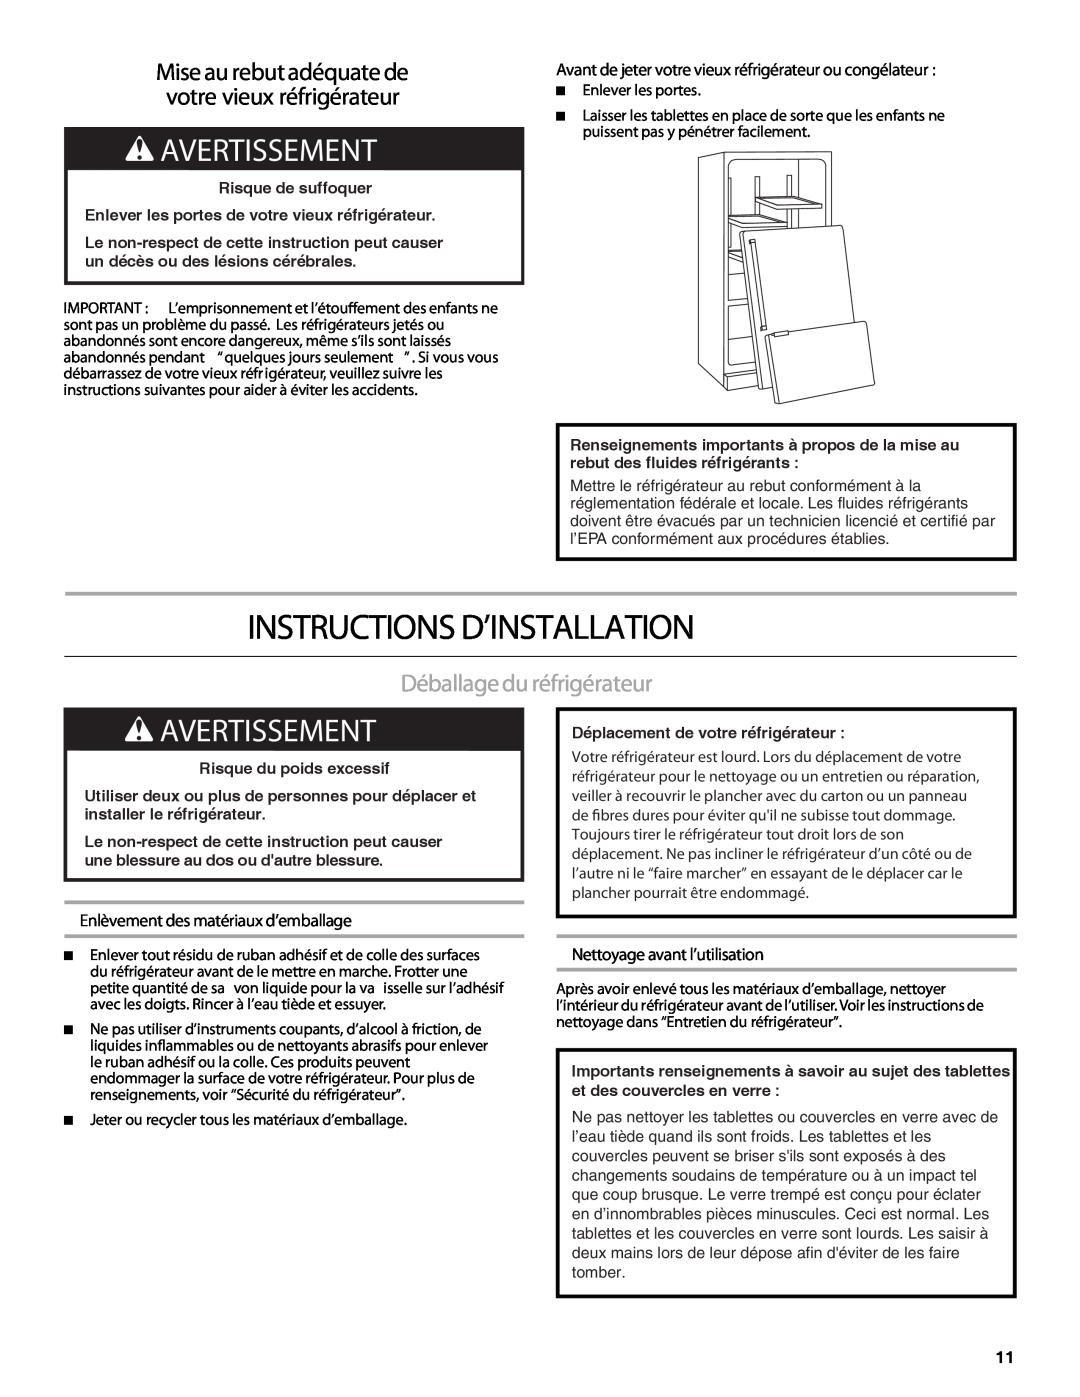 Heartland HCBMR19 Instructions D’Installation, Avertissement, Déballage du réfrigérateur, Nettoyage avant l’utilisation 